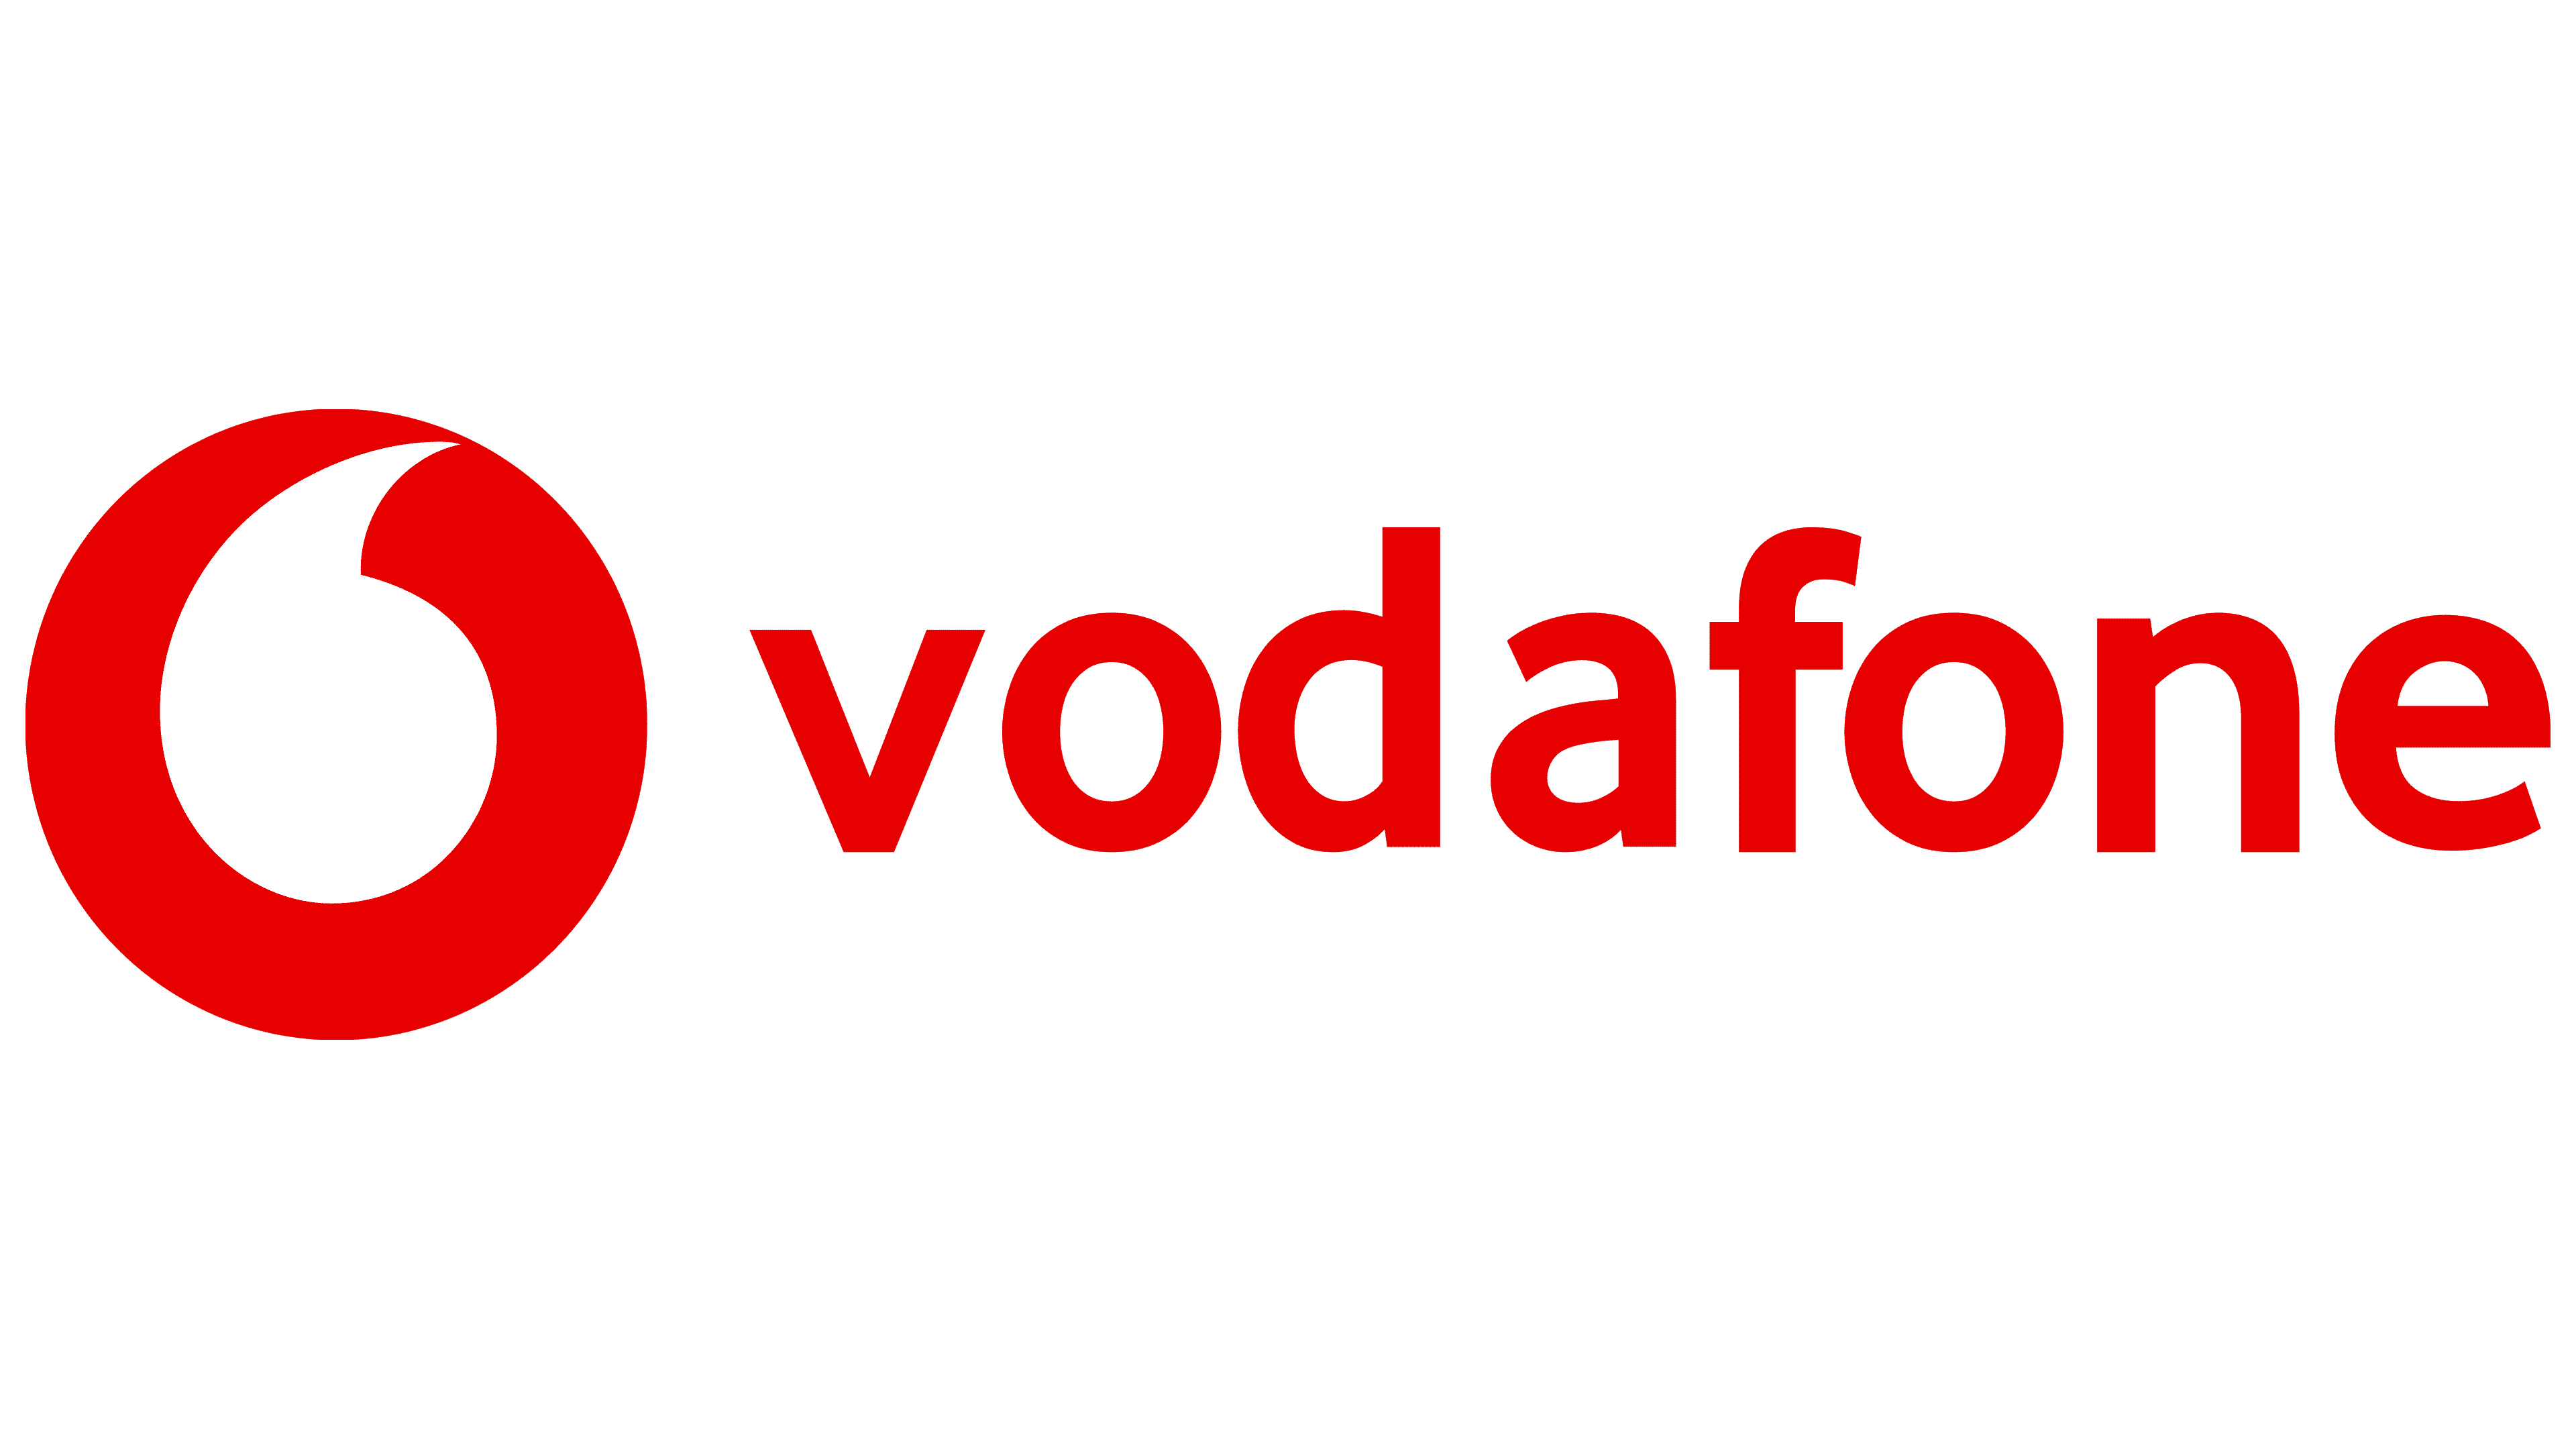 h-aero de Vodafone 